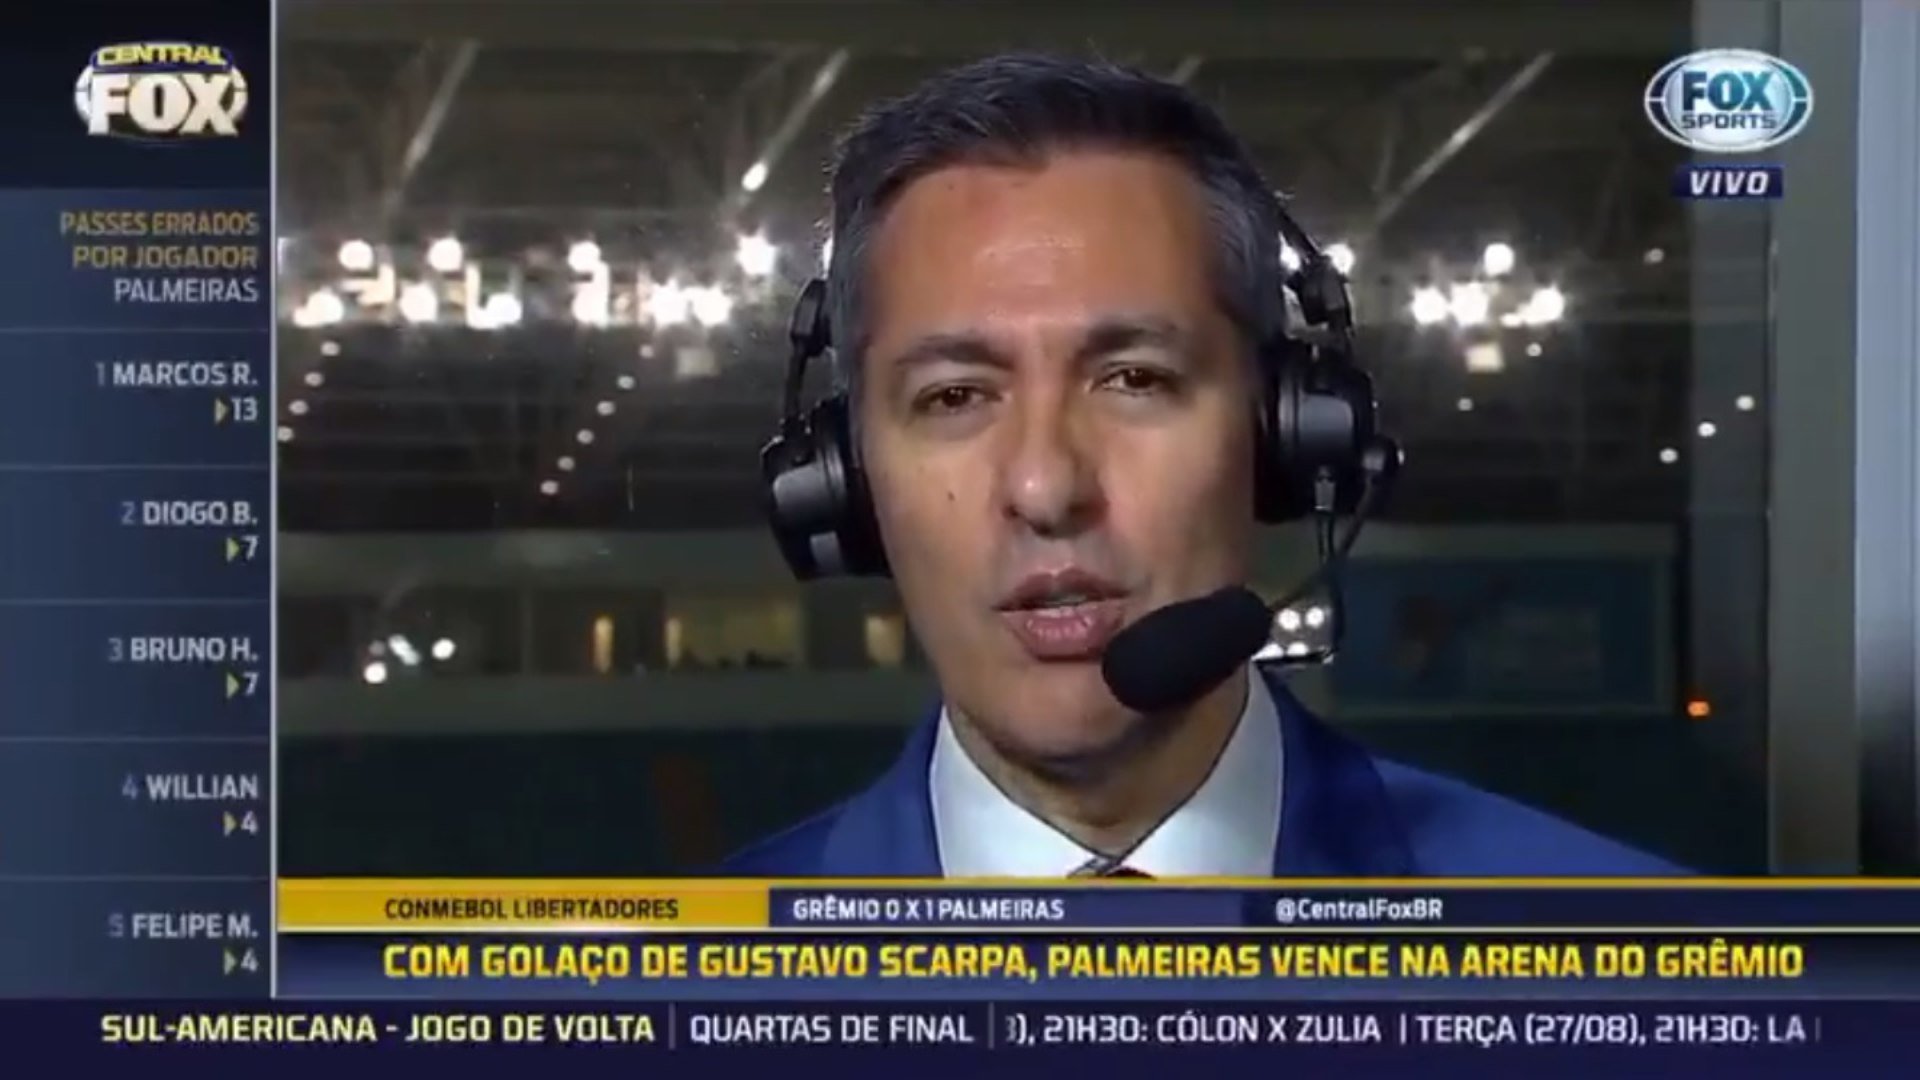 Após partida entre Grêmio e Palmeiras pela Libertadores de 2019, áudio de Nivaldo Prieto acabou vazando na transmissão do Fox Sports: "Grita comigo não! Eu quebro a sua cara". O narrador provavelmente estava falando com alguém da produção.